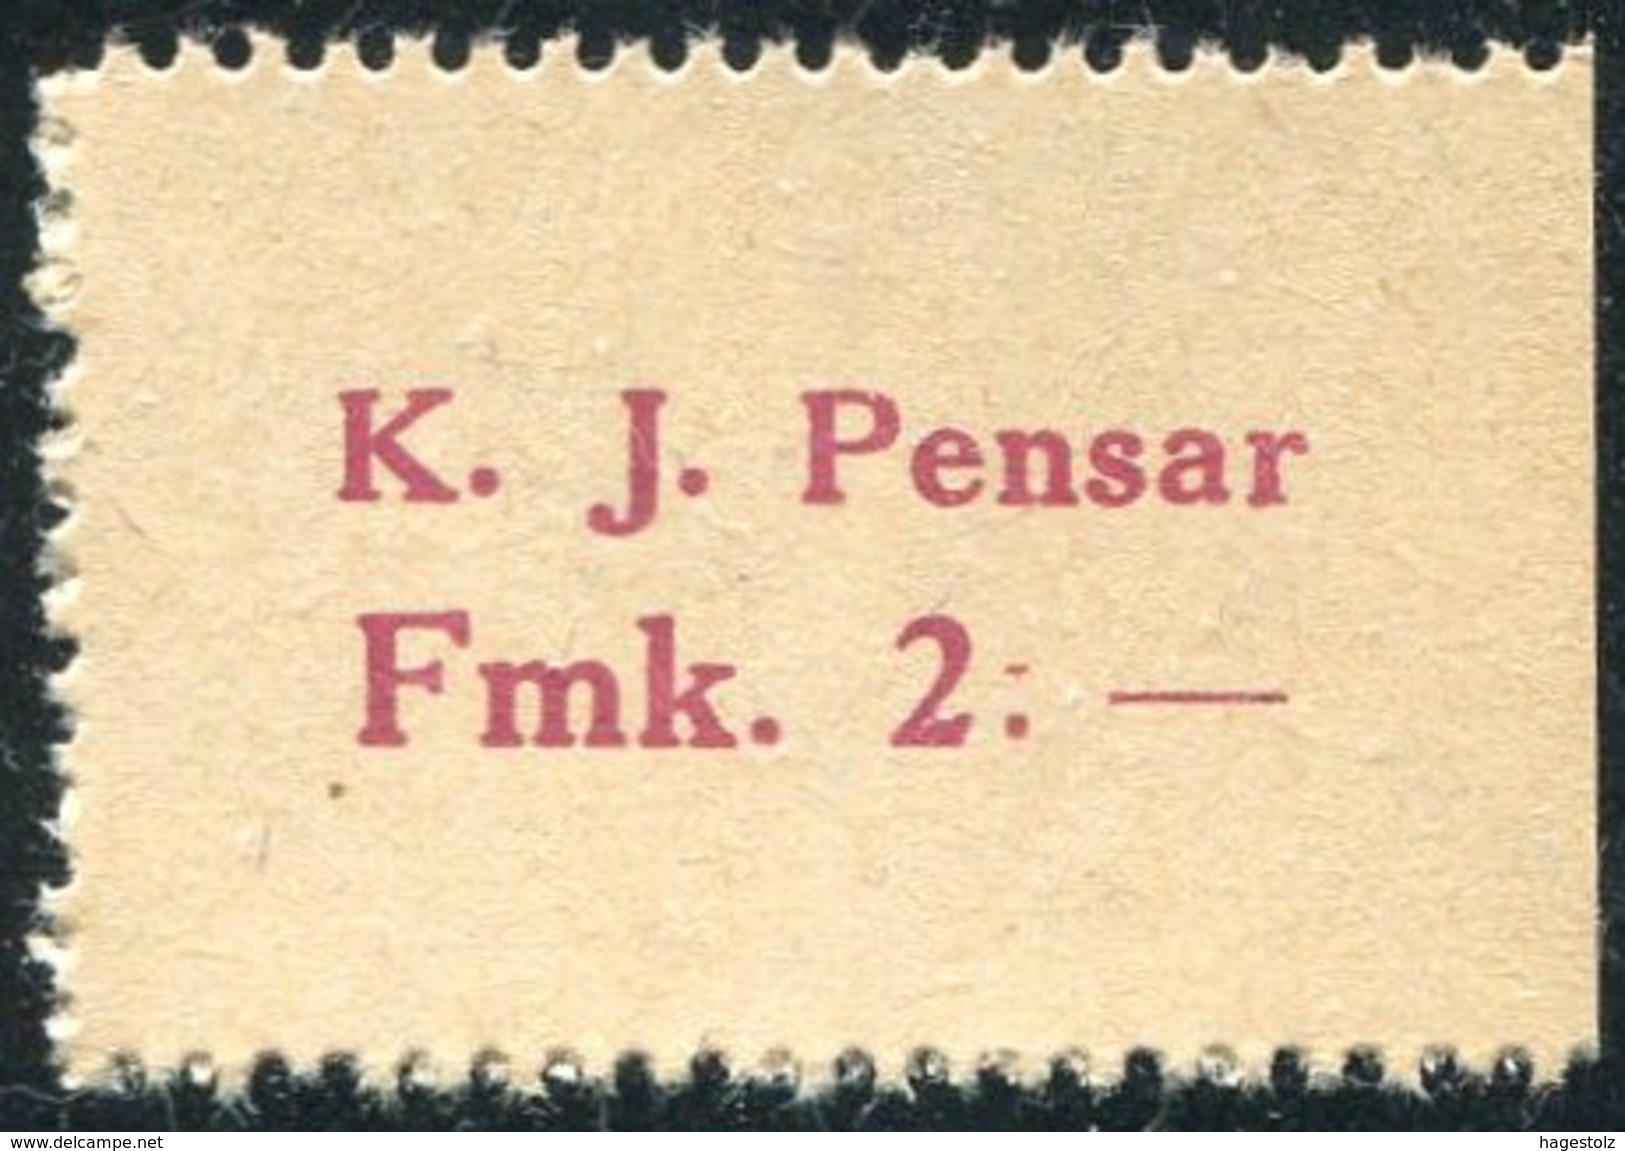 Finland Finnland Finlande 1918 Nykarleby K. J. Pensar Emergency Currency Money-stamp Revenue 2 Marks Wertmarke Notgeld - Finland